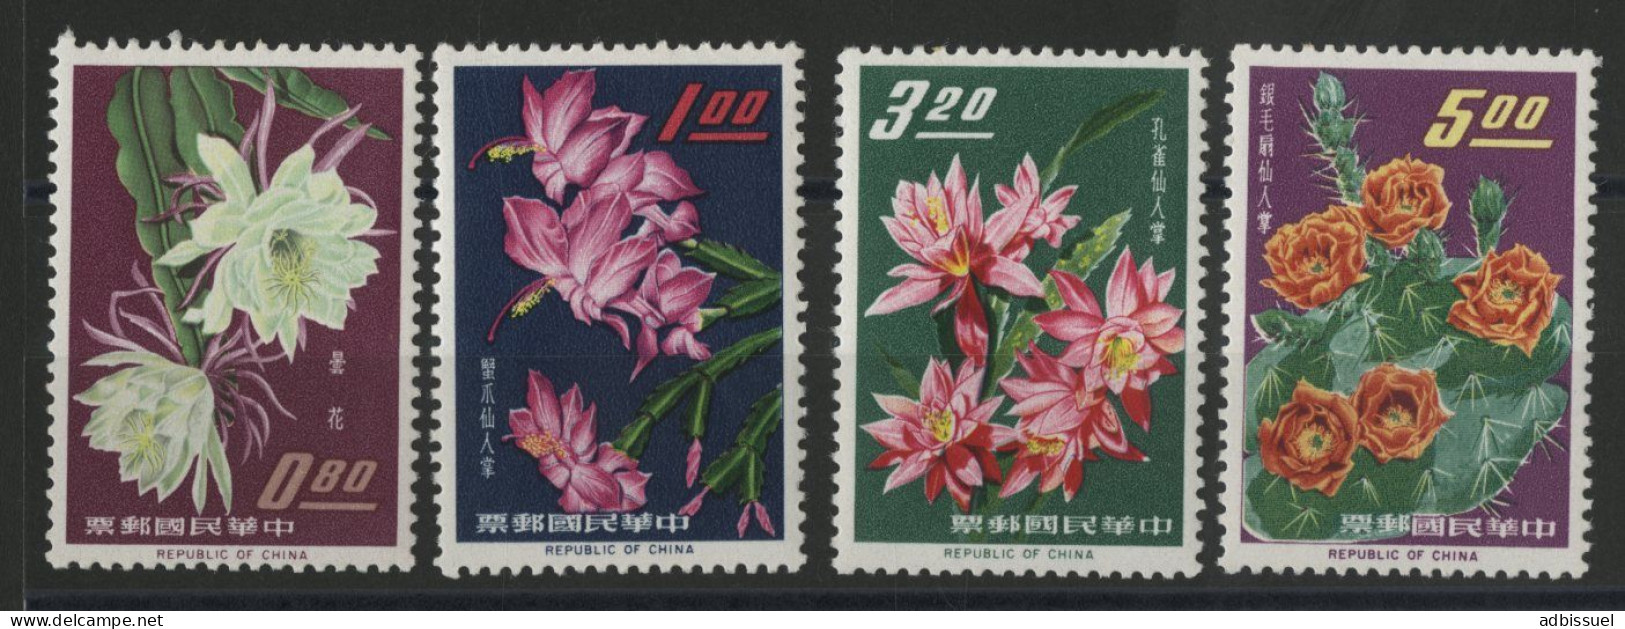 TAIWAN REPUBLIC OF CHINA Bloc N° 455 à 458 Neuf ** (MNH) FLEURS FLOWERS Qualité TB - Neufs